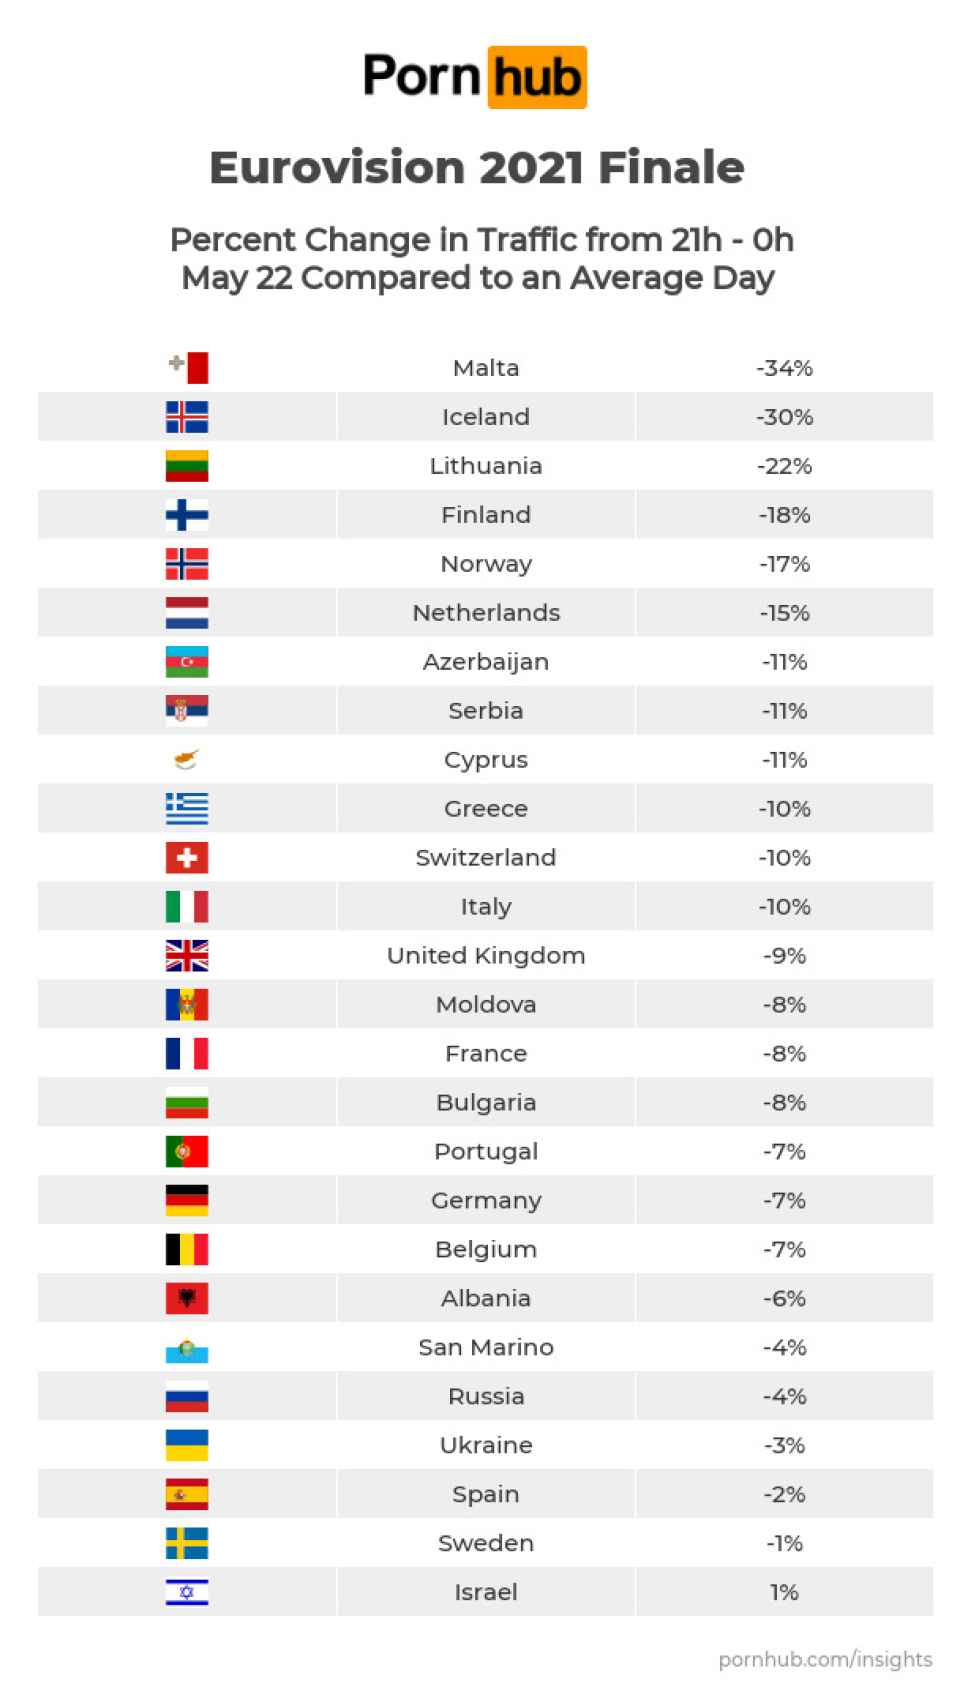 Porcentaje de cambio en el tráfico de Pornhub durante la final de Eurovisión 2021.